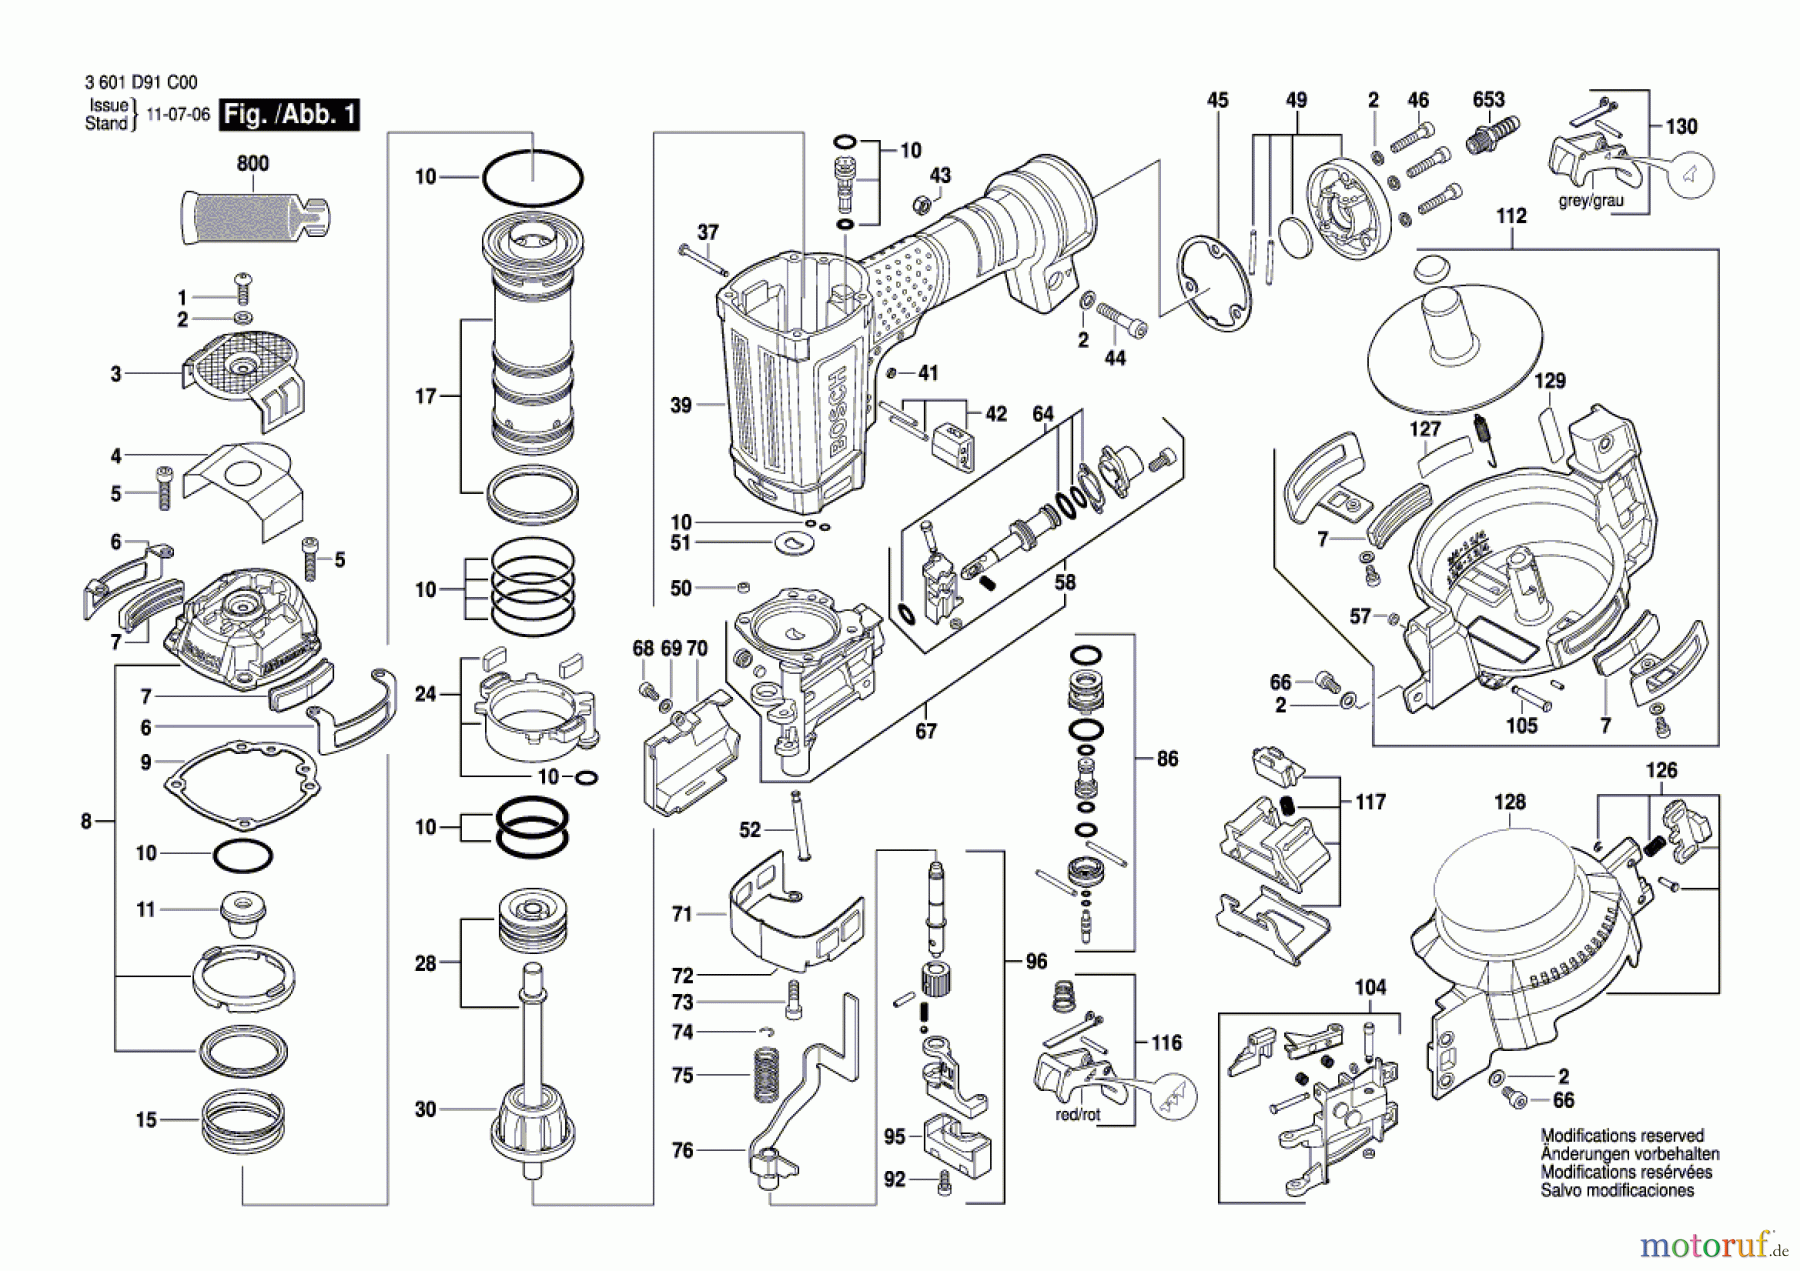  Bosch Werkzeug Druckluftnagler GCN 45-15 Seite 1